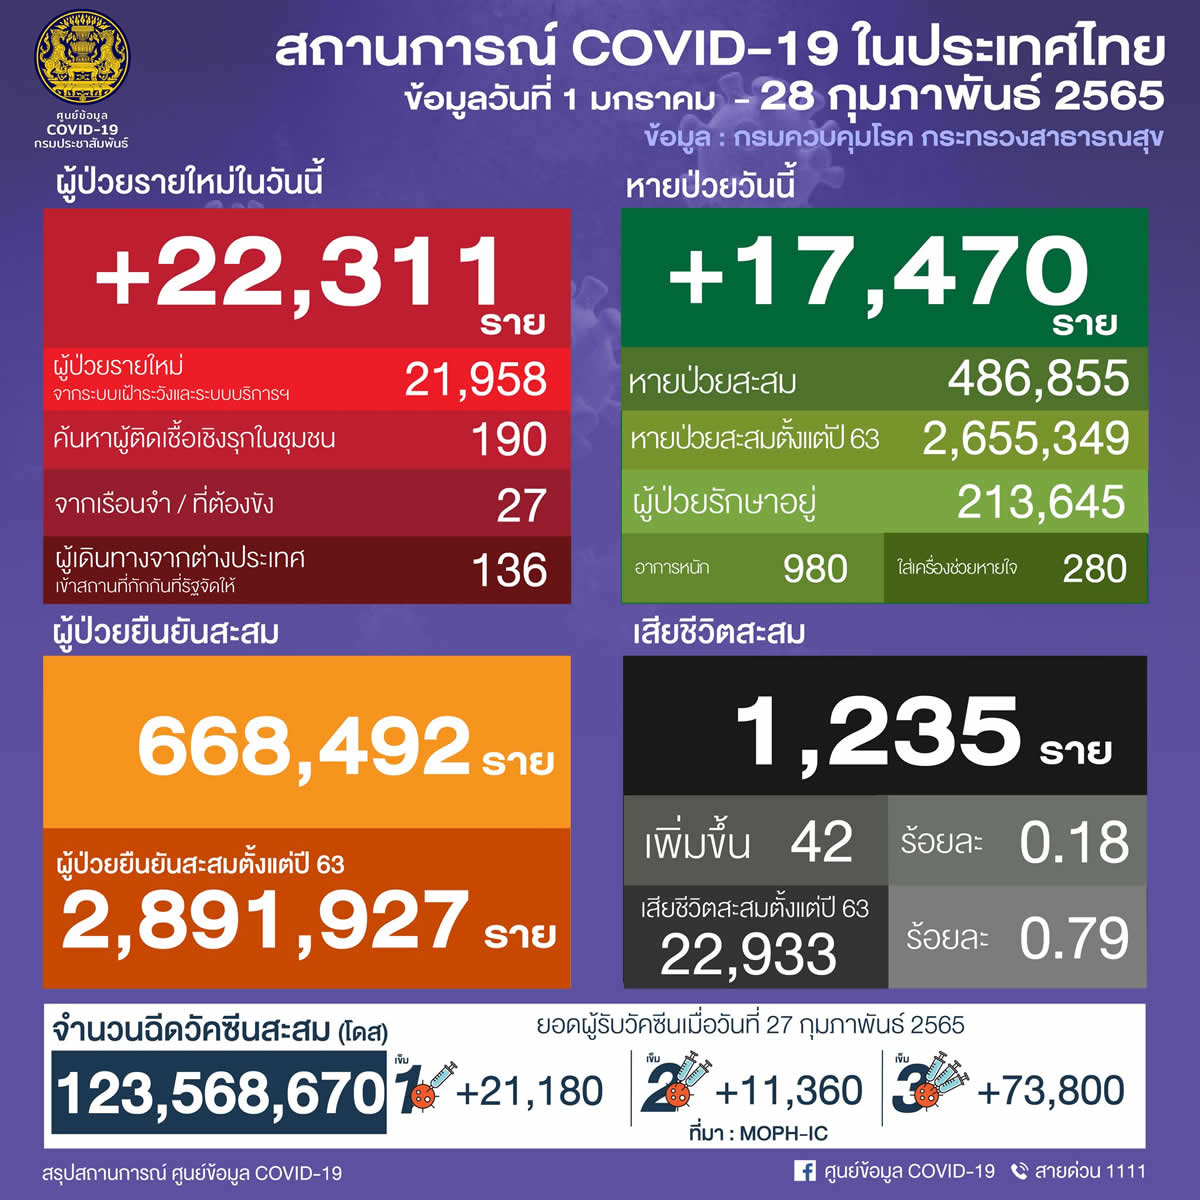 タイ 22,311人陽性 42人死亡／バンコク 2,779人陽性／チョンブリ 1,275人陽性／ノンタブリ 1,095人陽性［2022年2月28日発表］